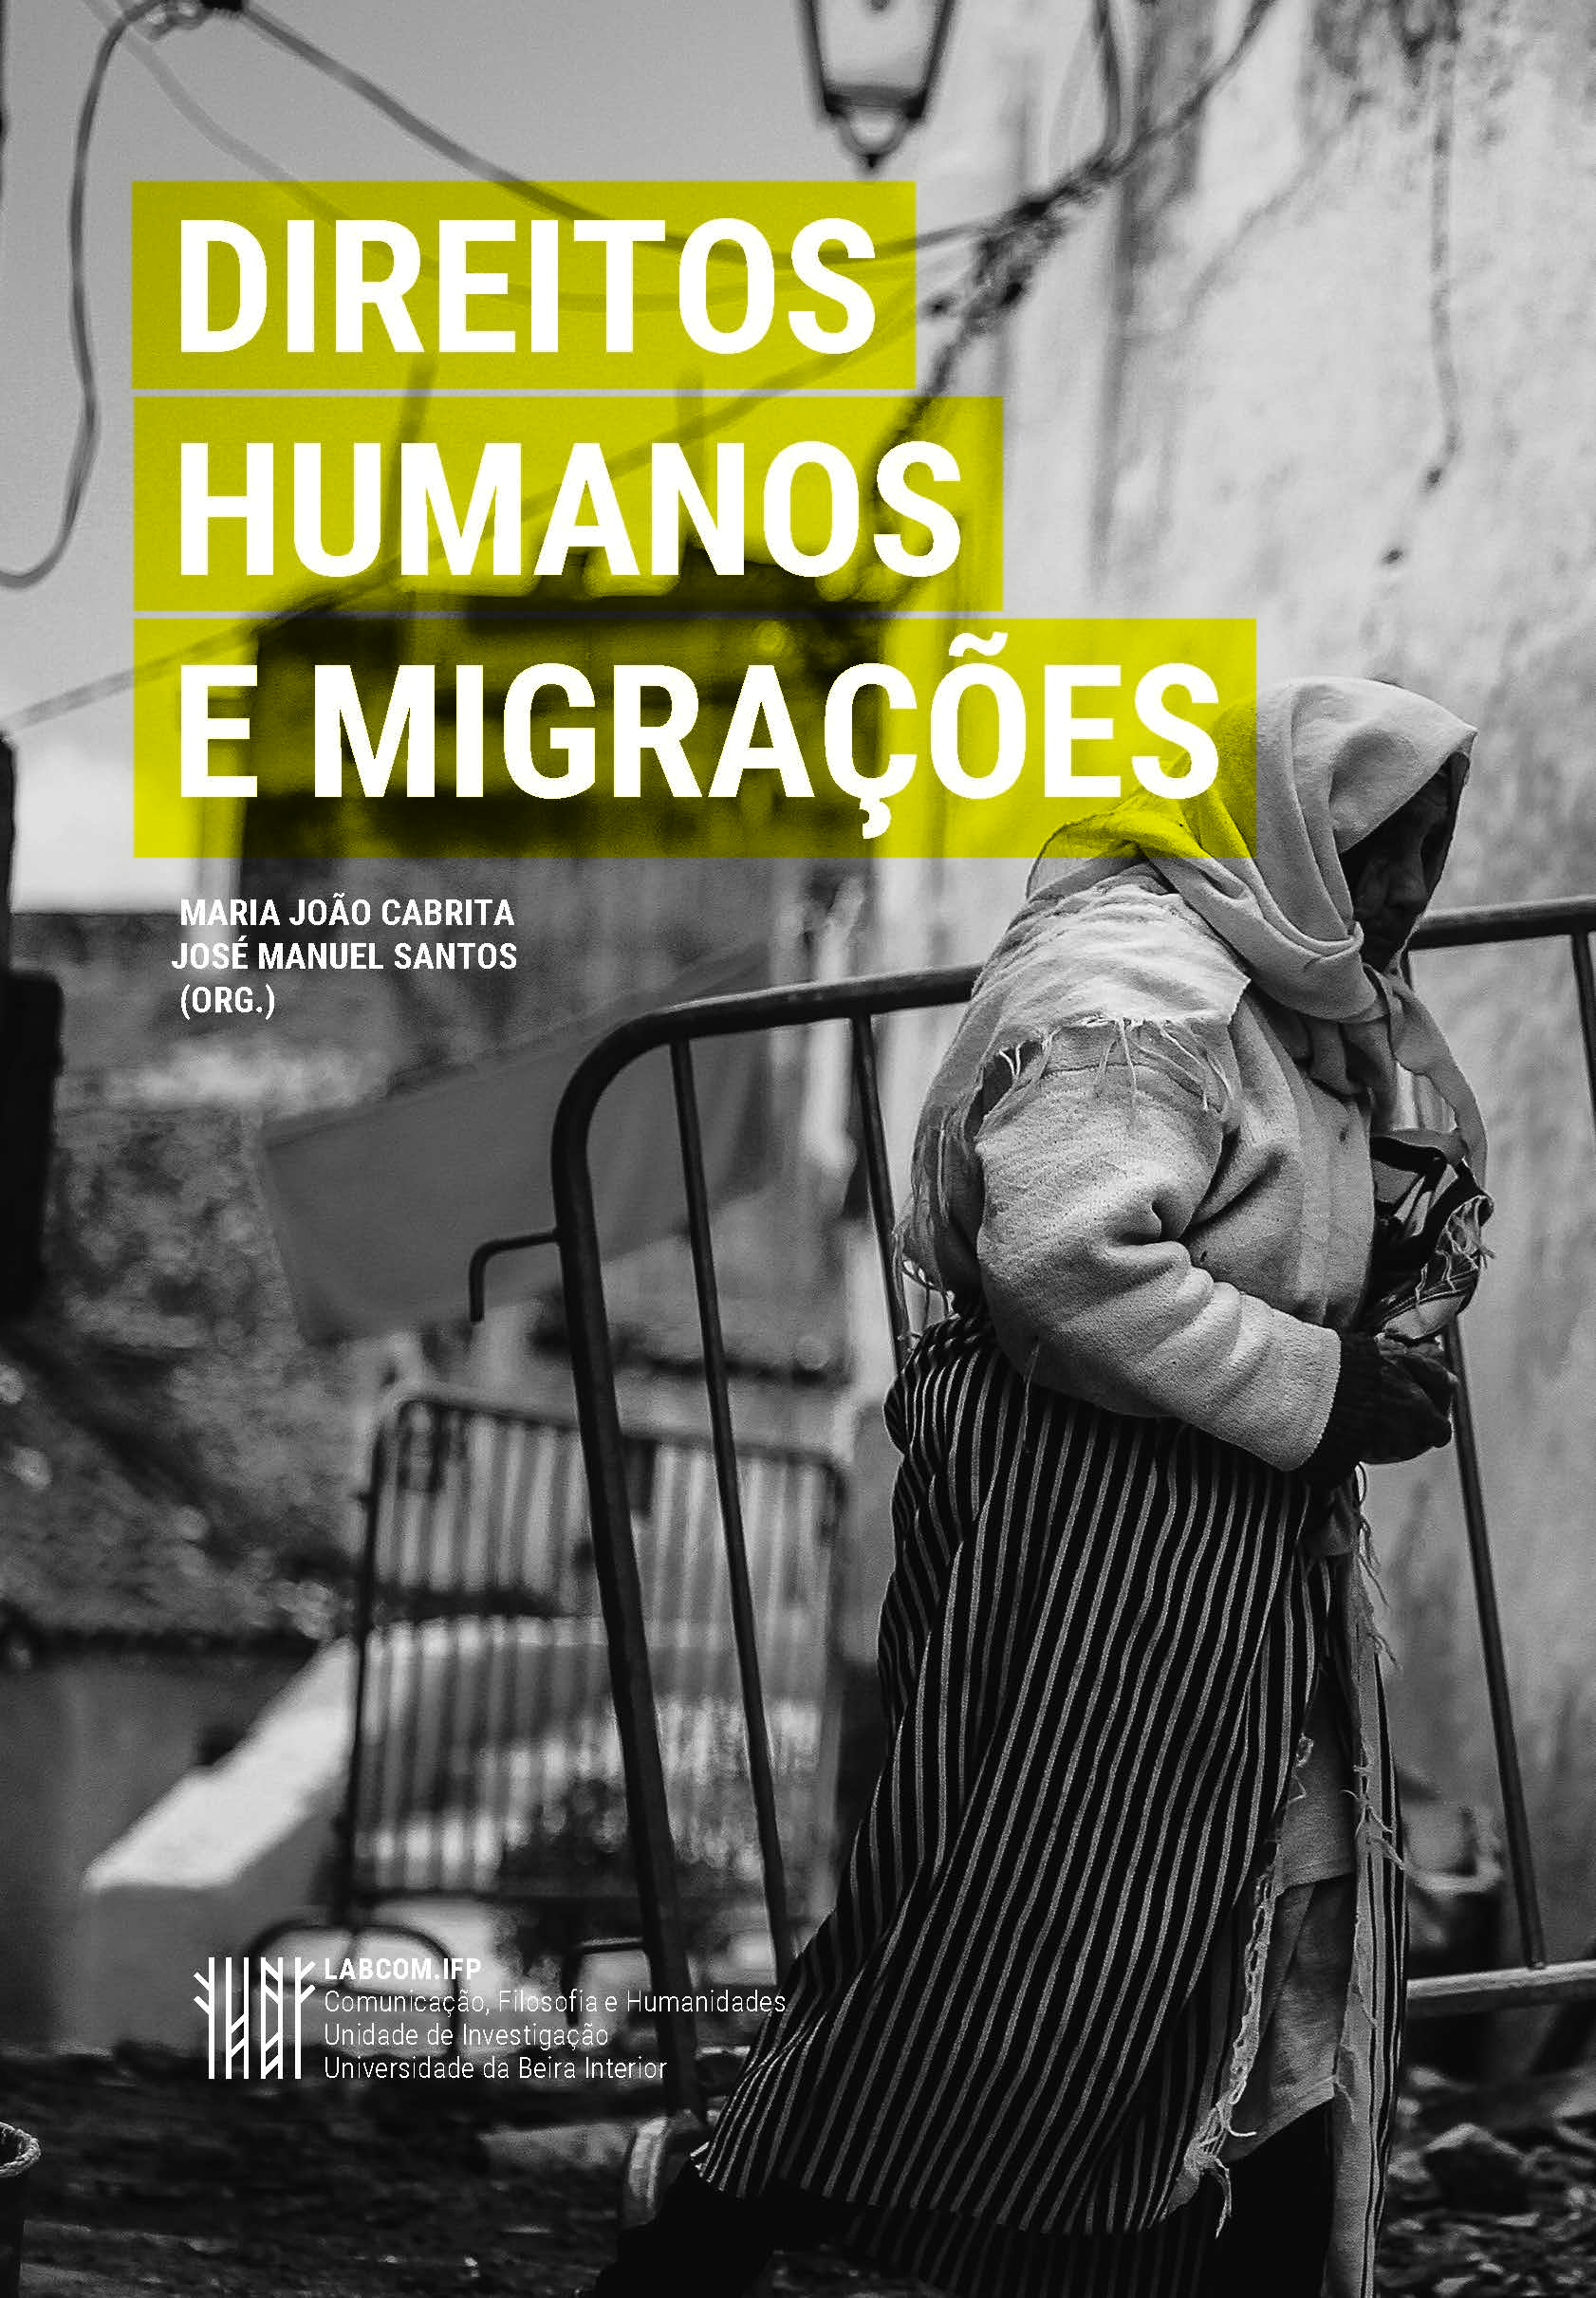 Capa: Maria João Cabrita e José Manuel Santos (2019) Direitos Humanos e Migrações. Communication  +  Philosophy  +  Humanities. .